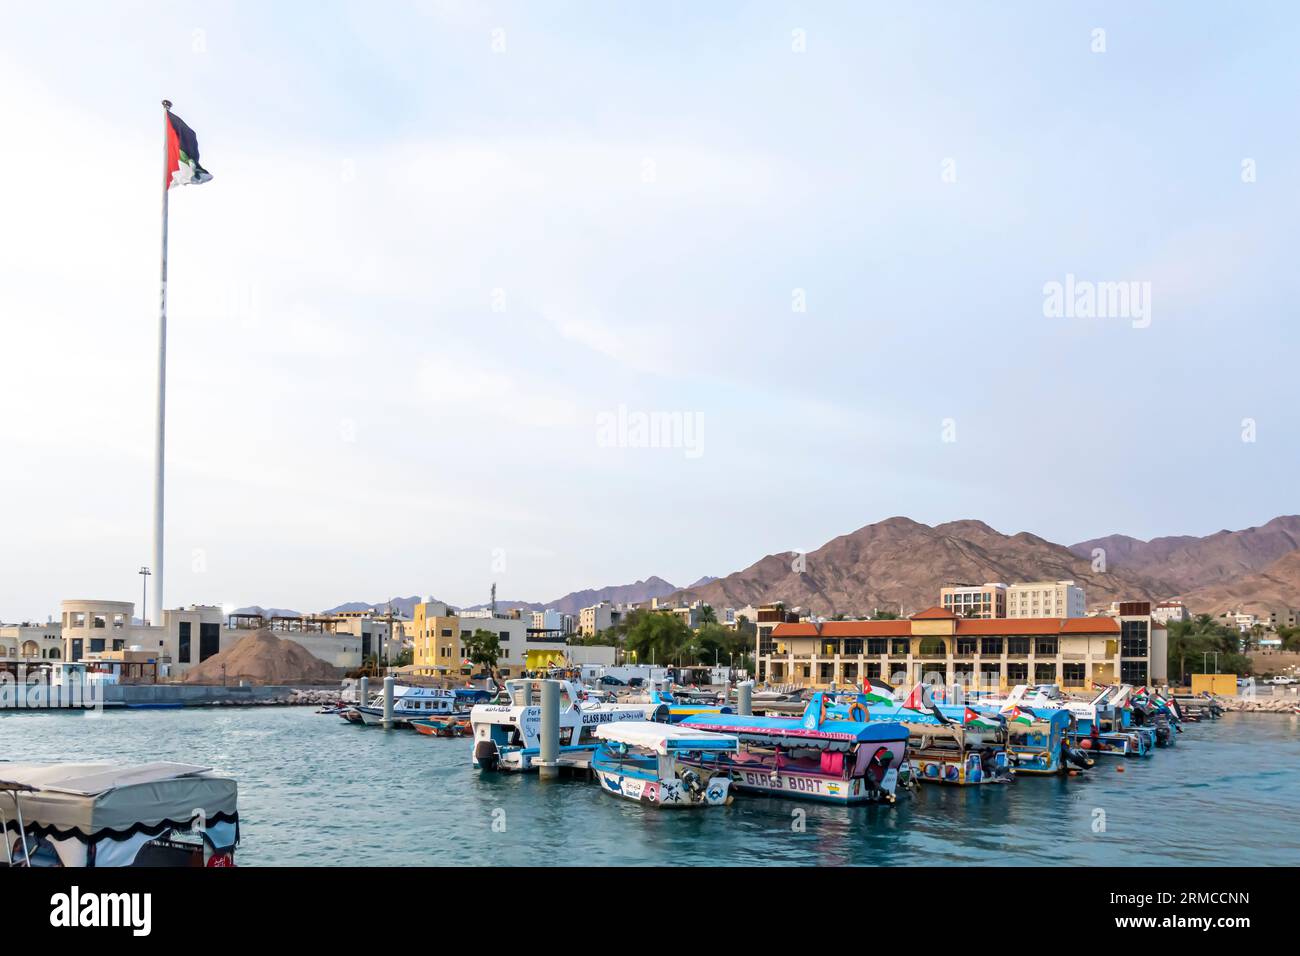 Vue sur le marché aux poissons d'Aqaba, la baie d'aqaba, le drapeau de Jordanie sur le poteau sur la place de la révolte arabe Banque D'Images